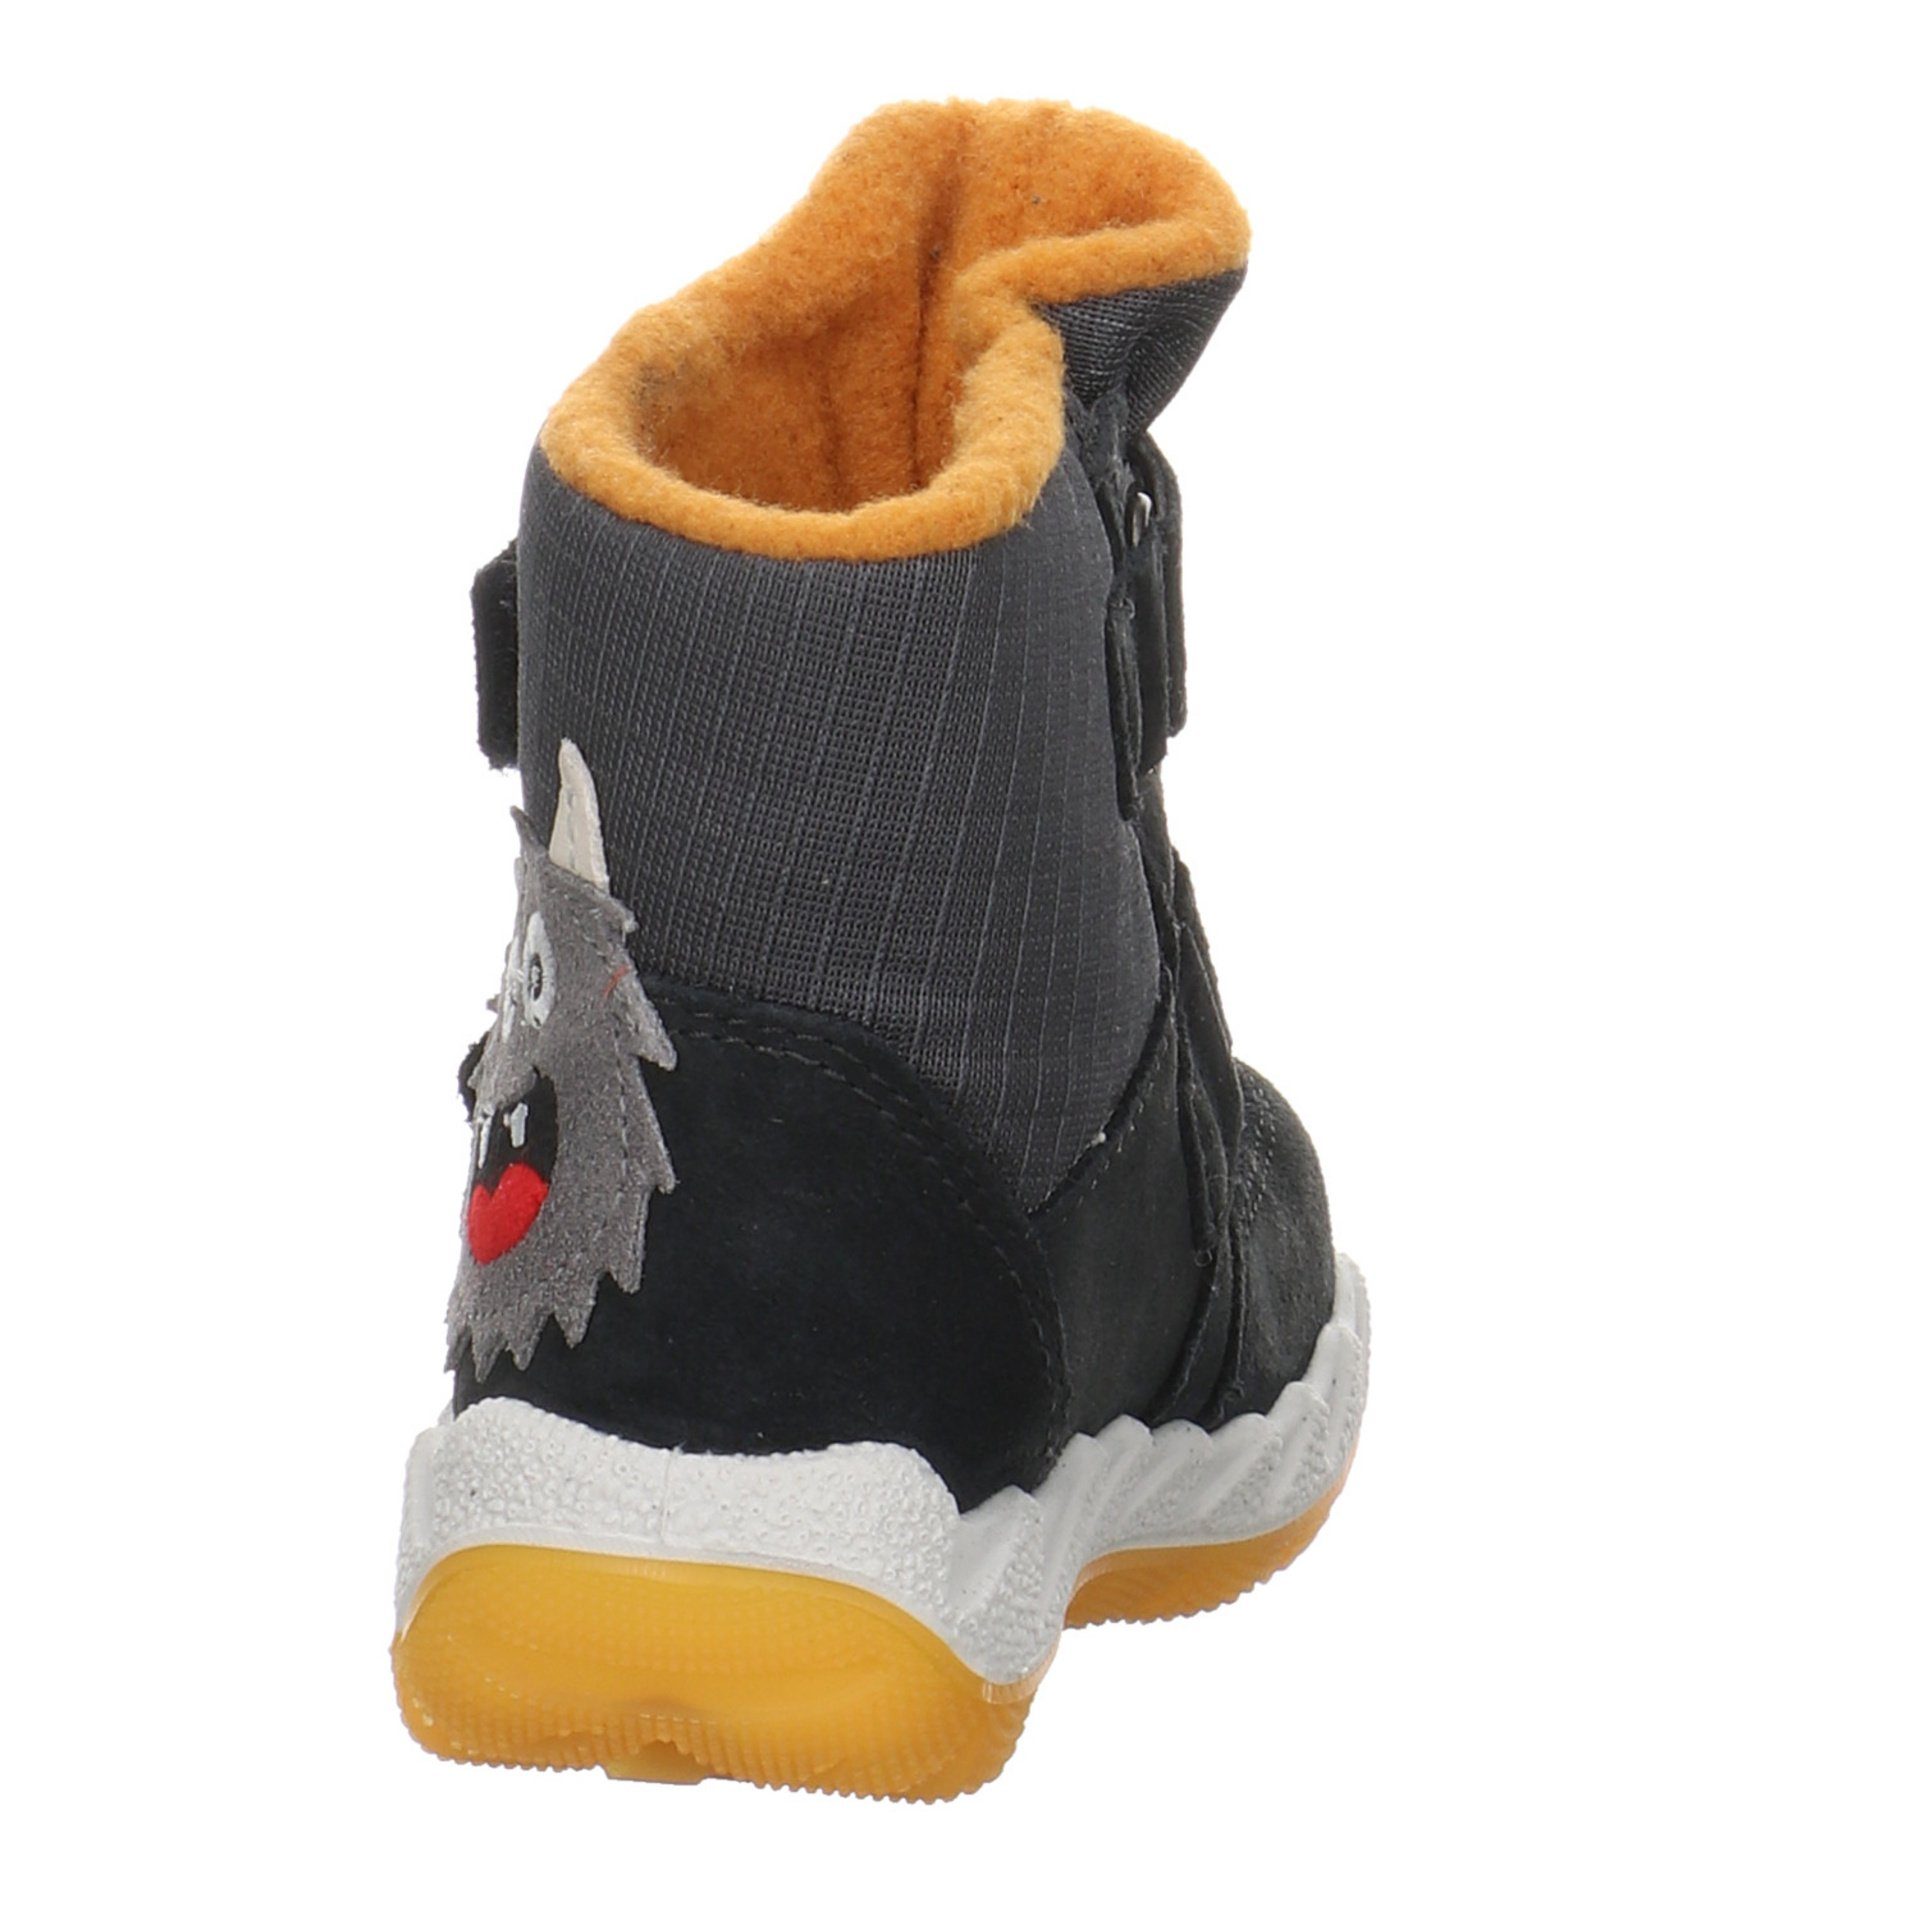 Superfit Icebird Krabbelschuhe Lauflernschuhe Baby gelb Boots grau Leder-/Textilkombination Lauflernschuh